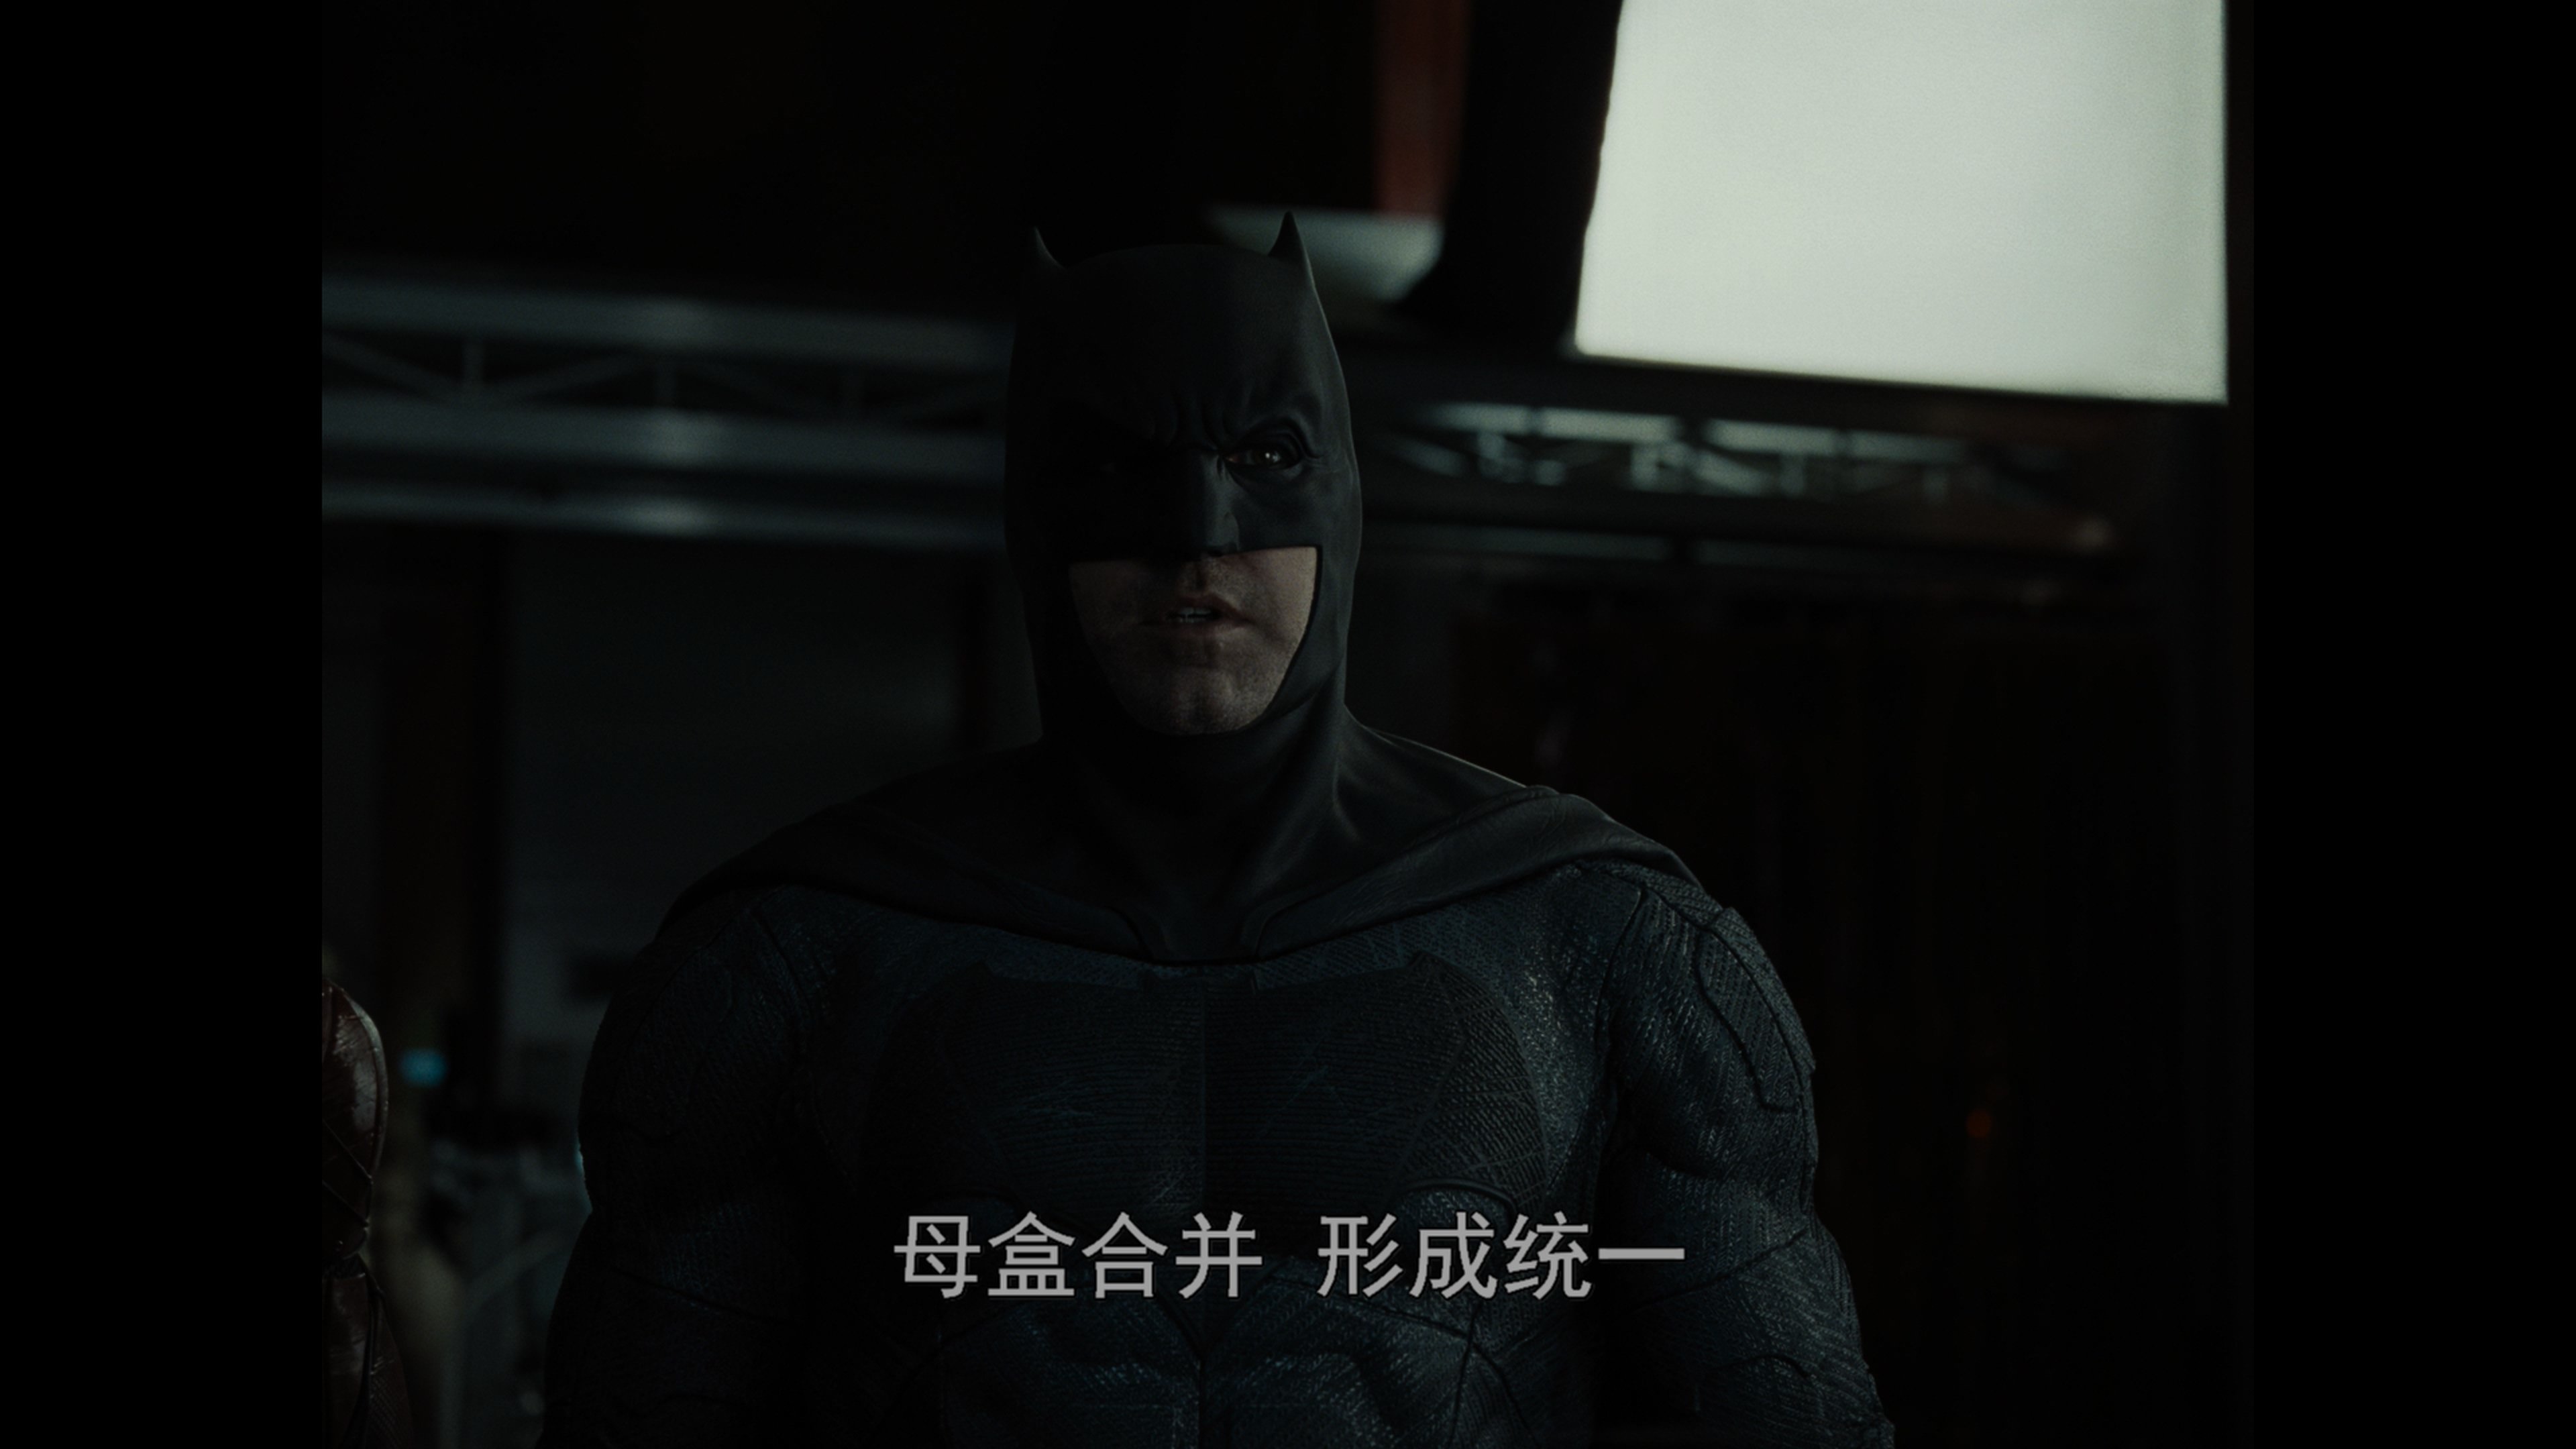 [扎克·施奈德版正义联盟][DiY官译简繁+简英繁英双语字幕] Zack Snyder's Justice League 2021 2160p EUR UHD Blu-ray HEVC Atmos TrueHD 7.1-DiY@HDHome    [136.22 GB ]-3.jpg